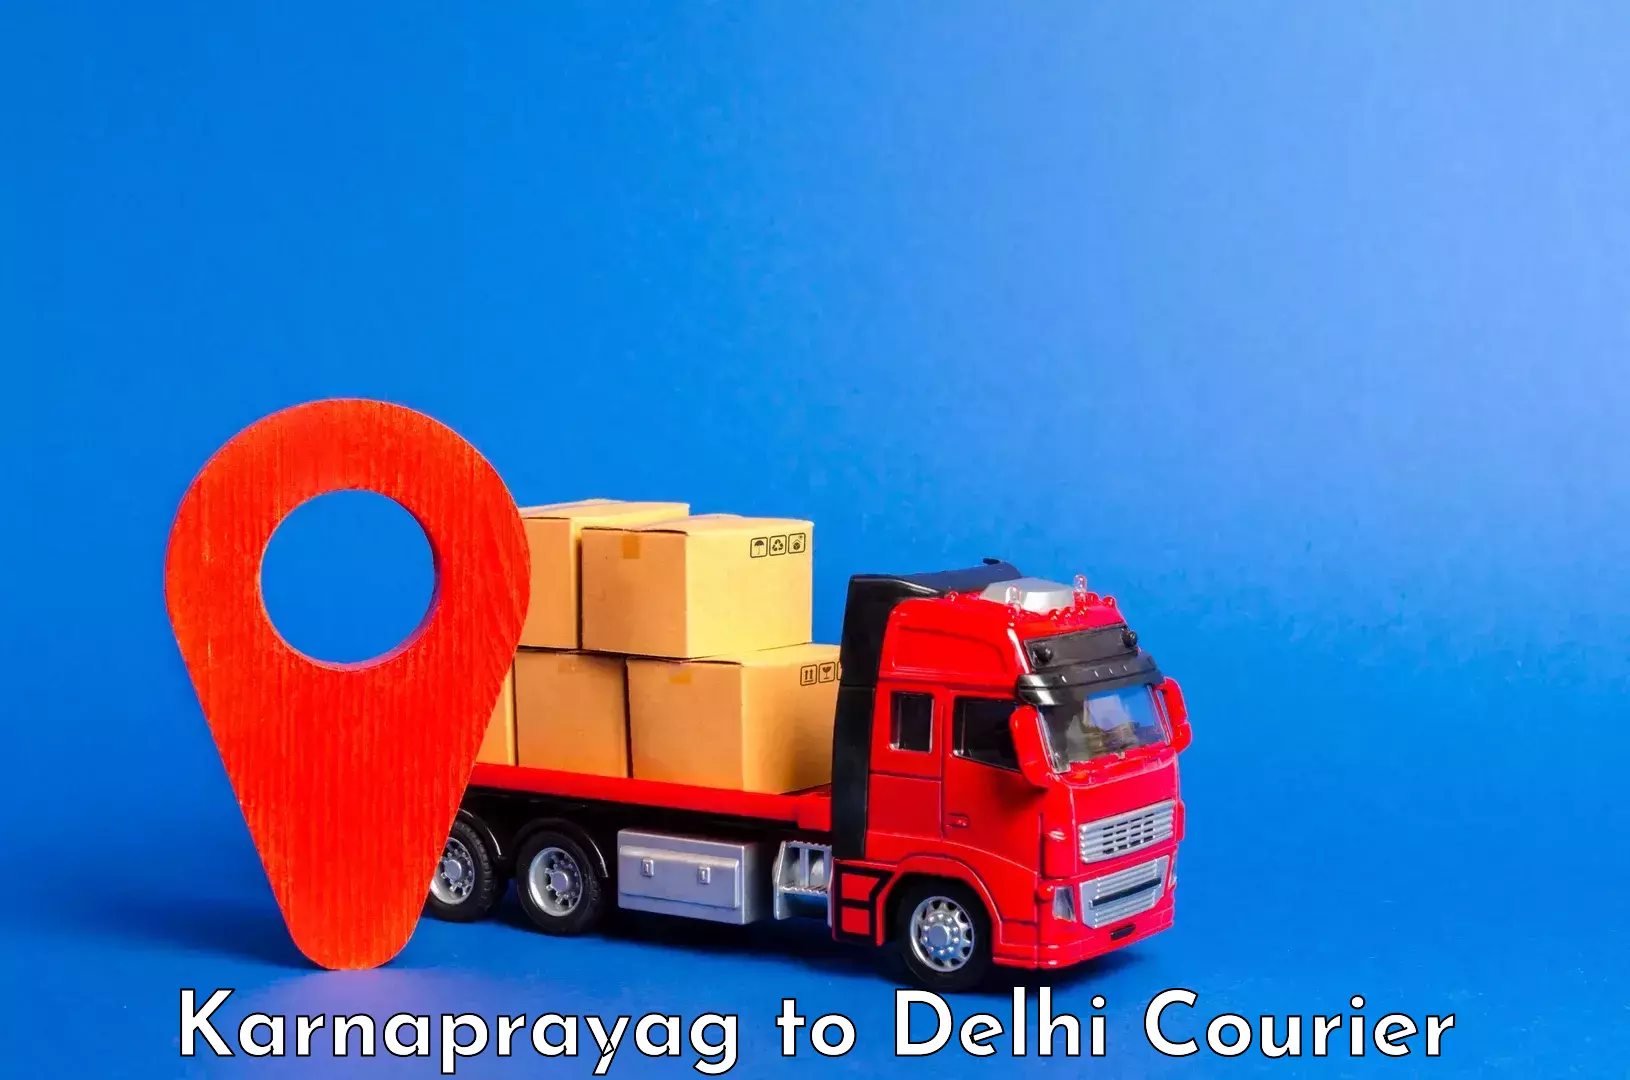 Luggage transport service Karnaprayag to University of Delhi